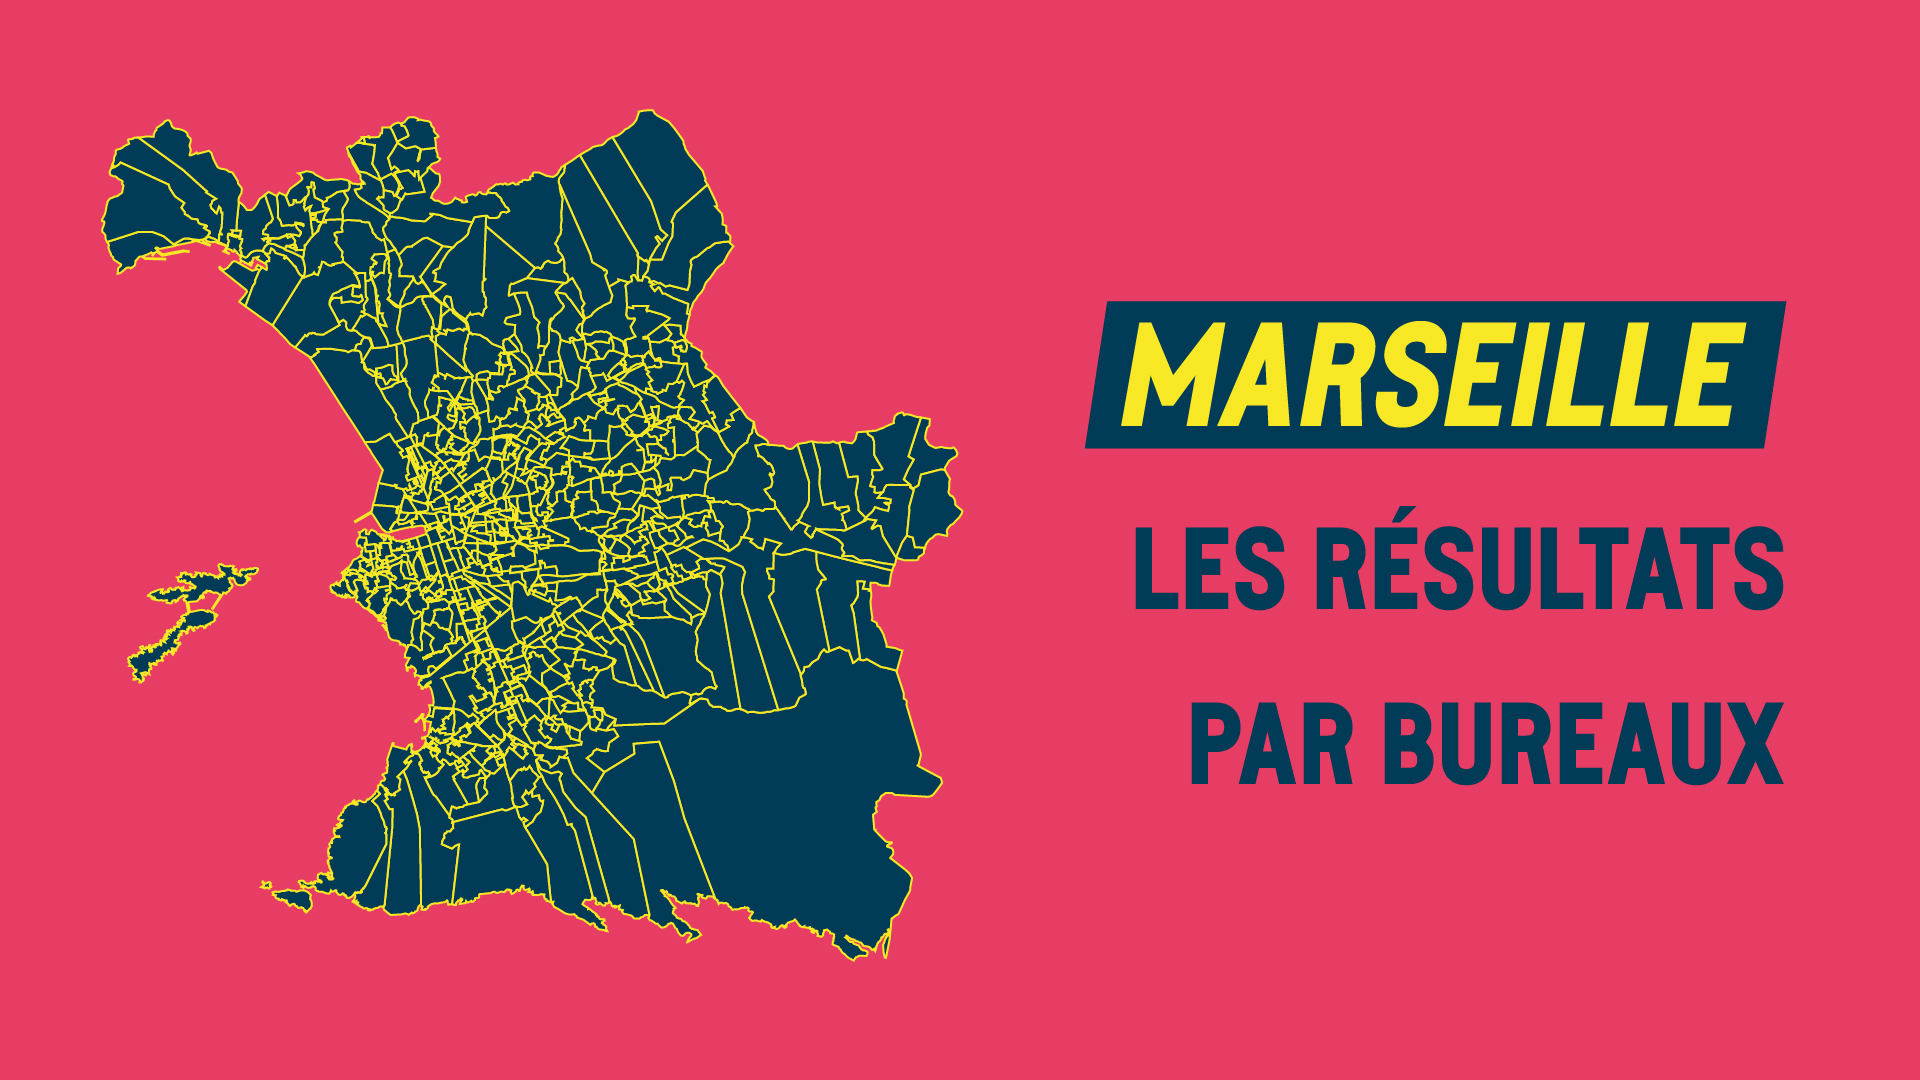 Les résultats des municipales 2020 de Marseille par bureaux